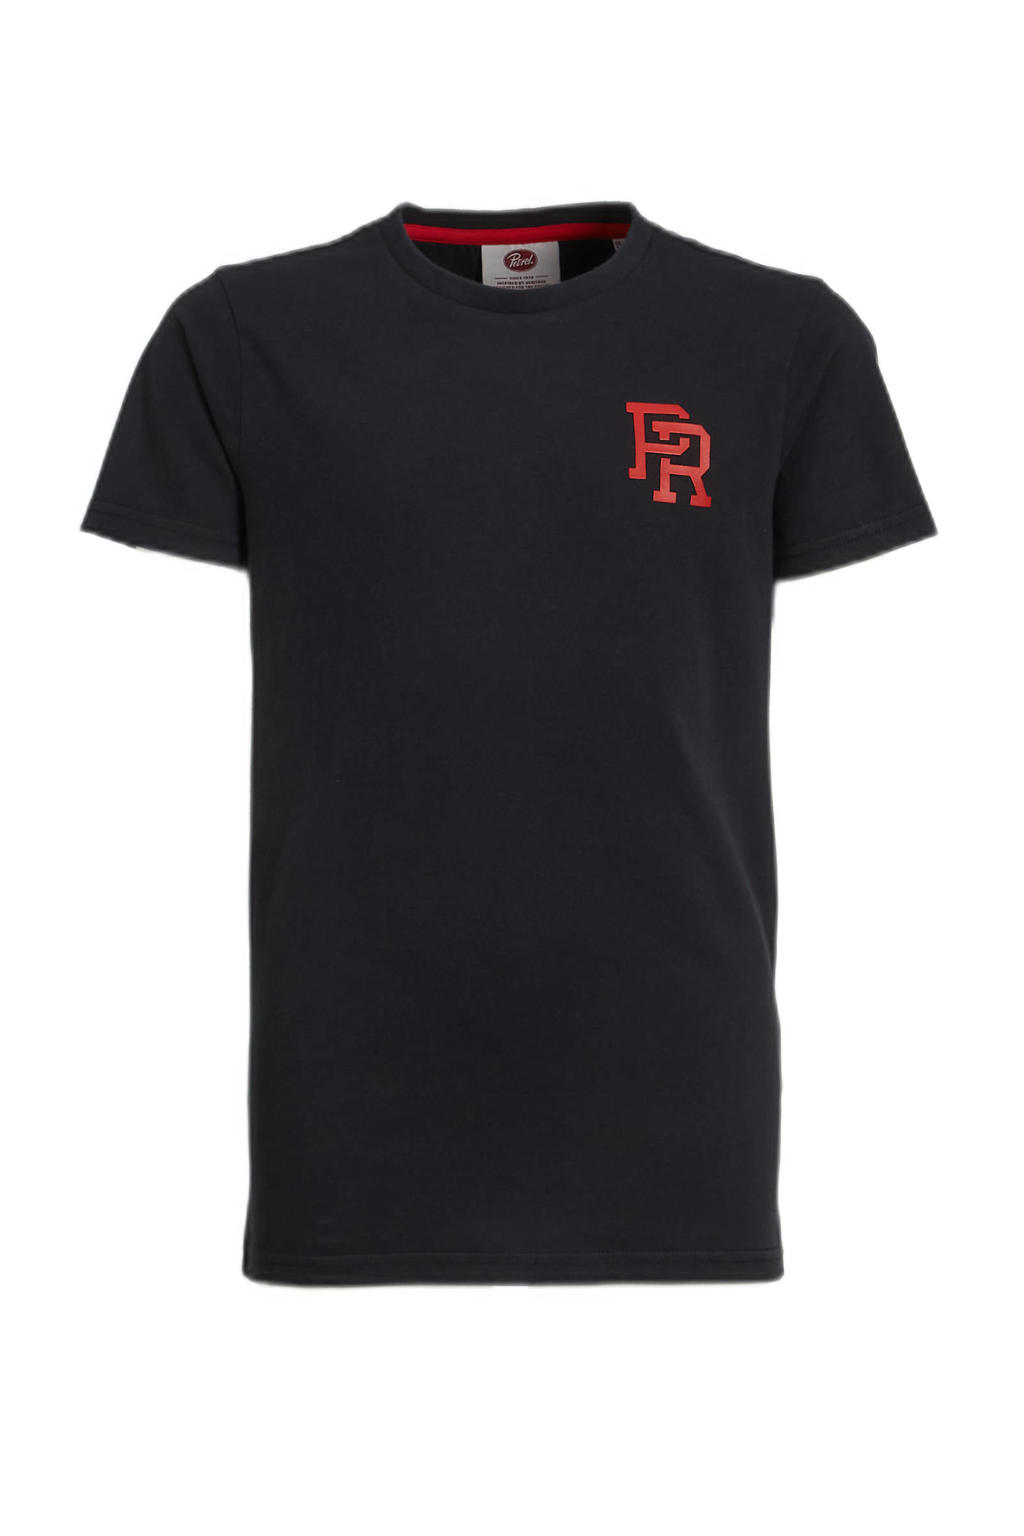 Zwarte jongens Petrol Industries T-shirt van katoen met printopdruk, korte mouwen en ronde hals